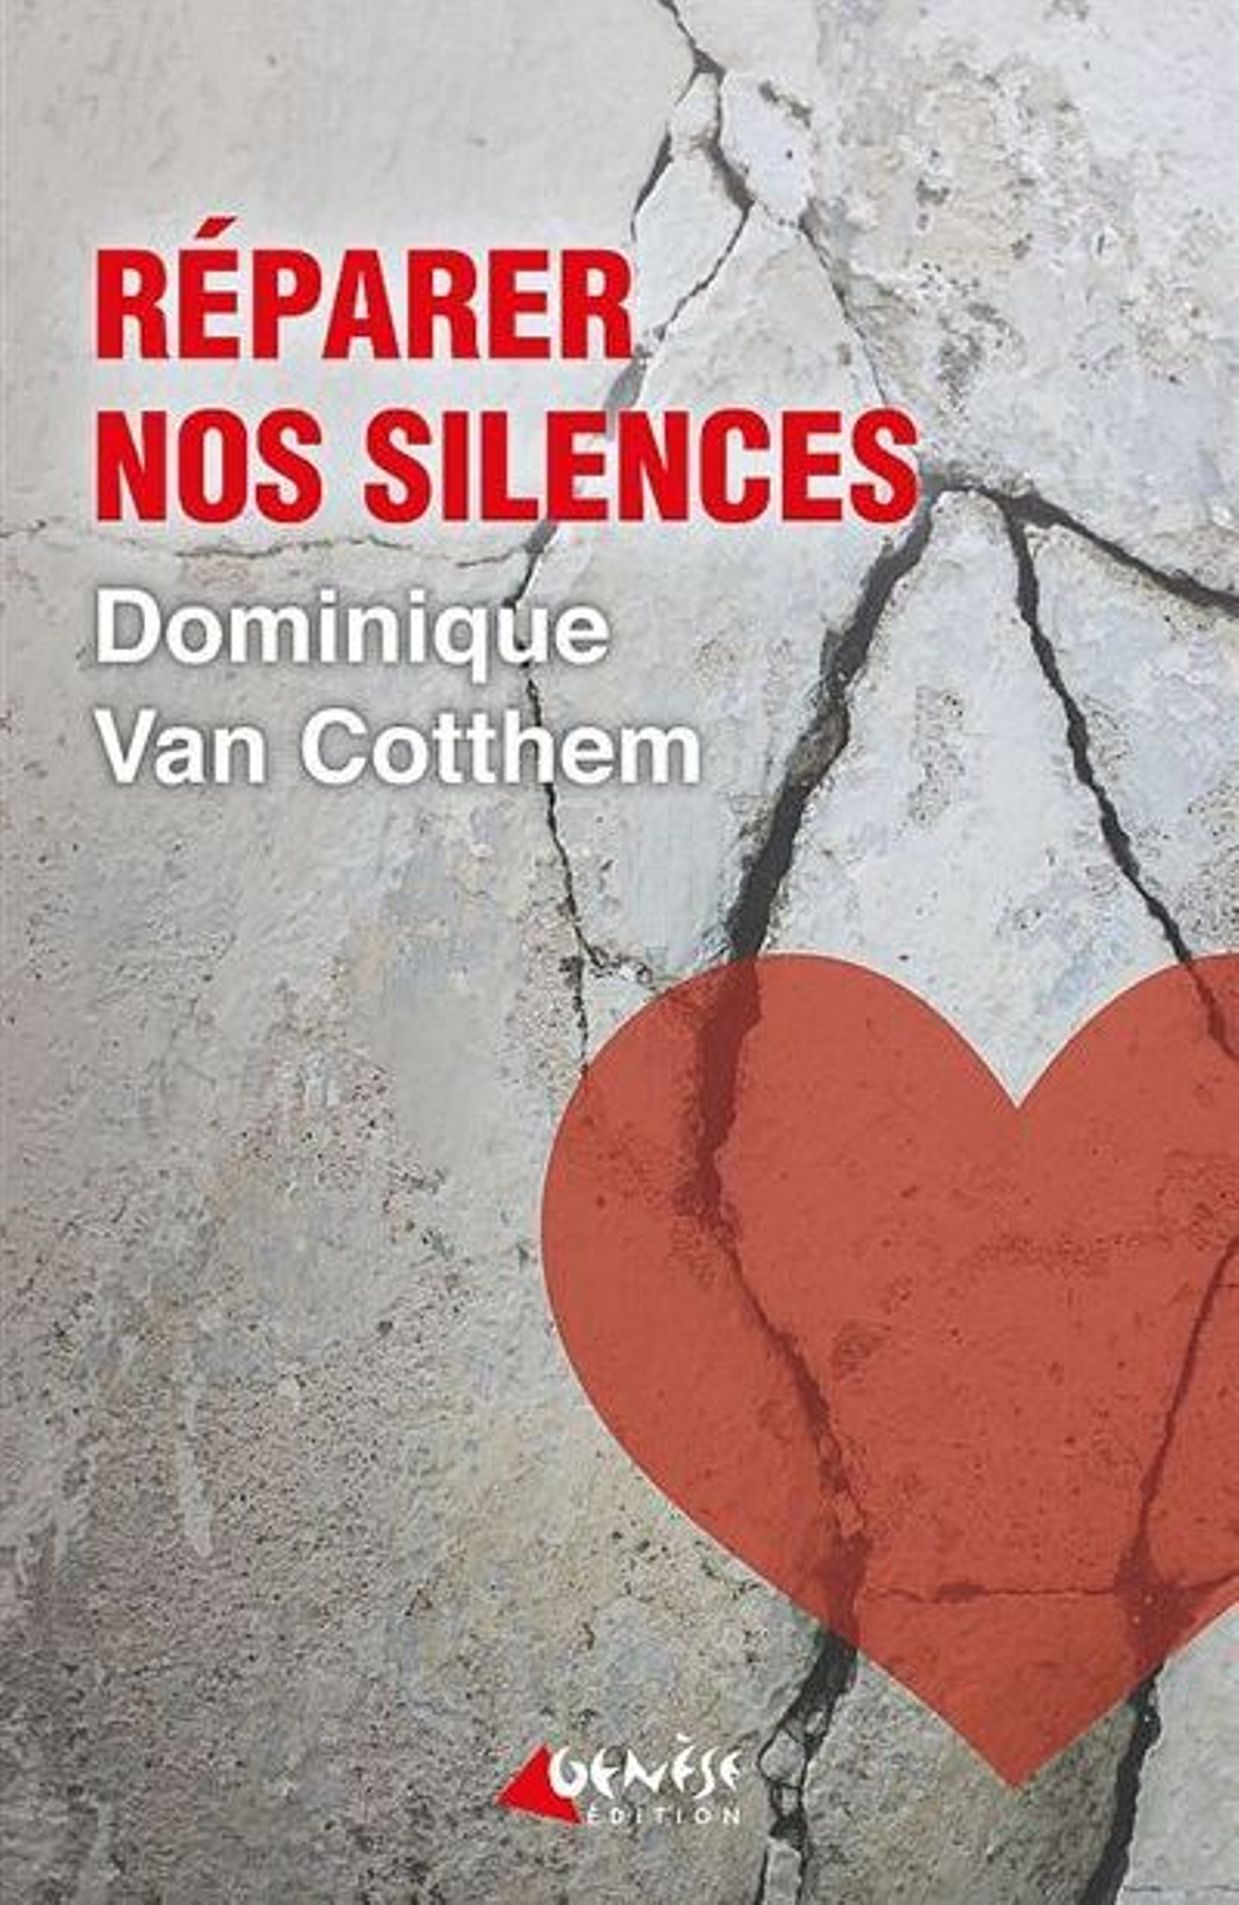 Réparer nos silences de Dominique Van Cotthem, Editions Genèse